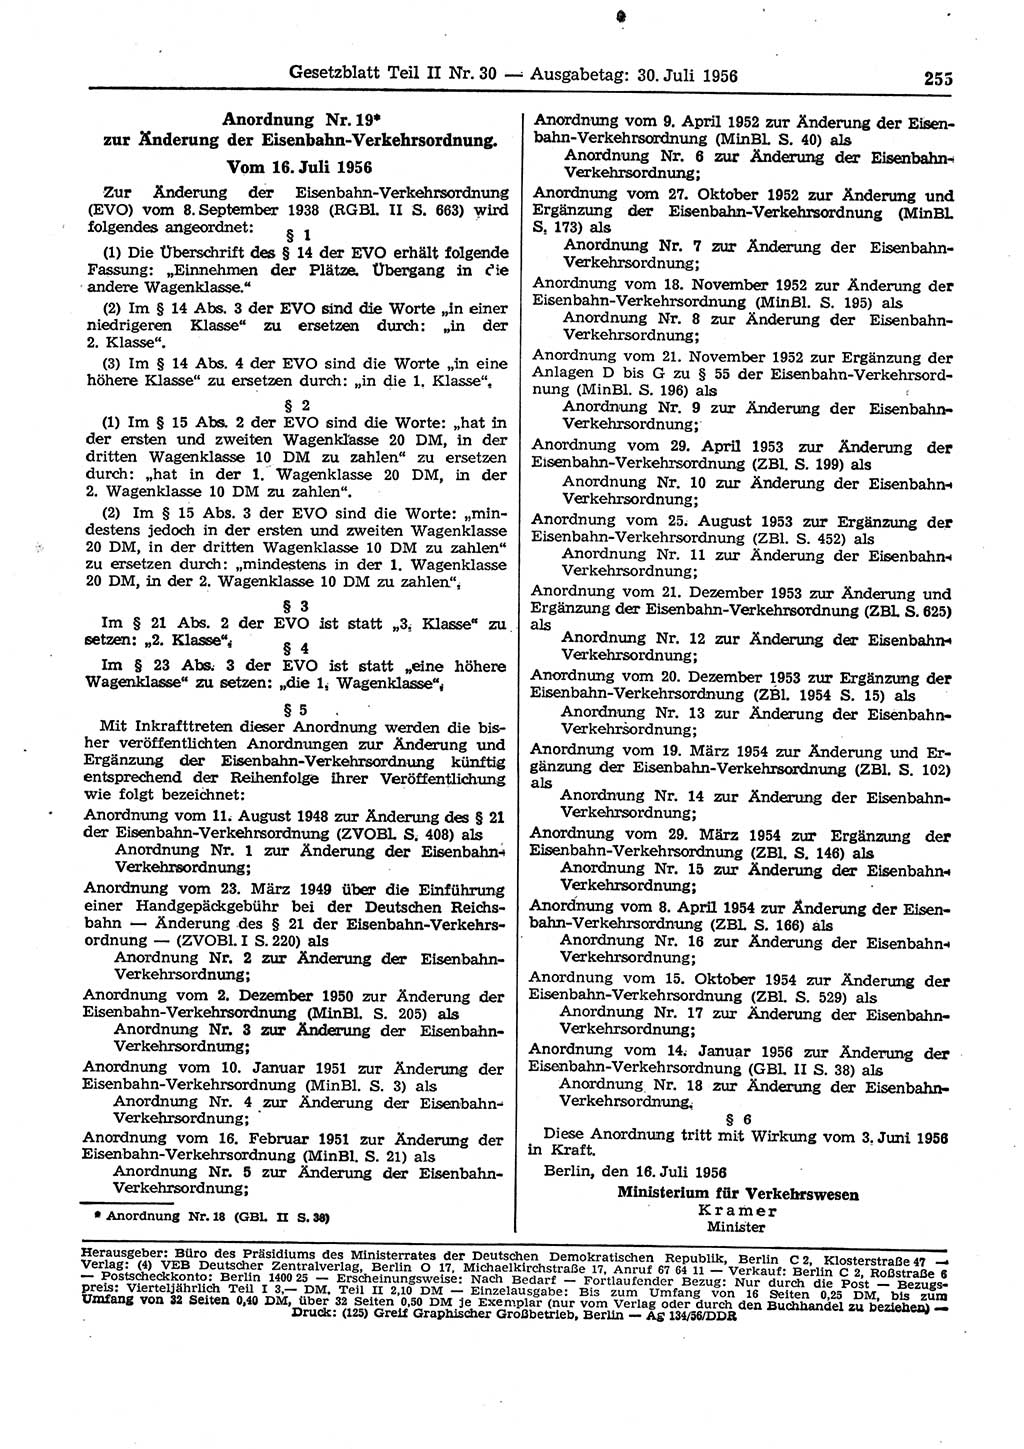 Gesetzblatt (GBl.) der Deutschen Demokratischen Republik (DDR) Teil ⅠⅠ 1956, Seite 255 (GBl. DDR ⅠⅠ 1956, S. 255)